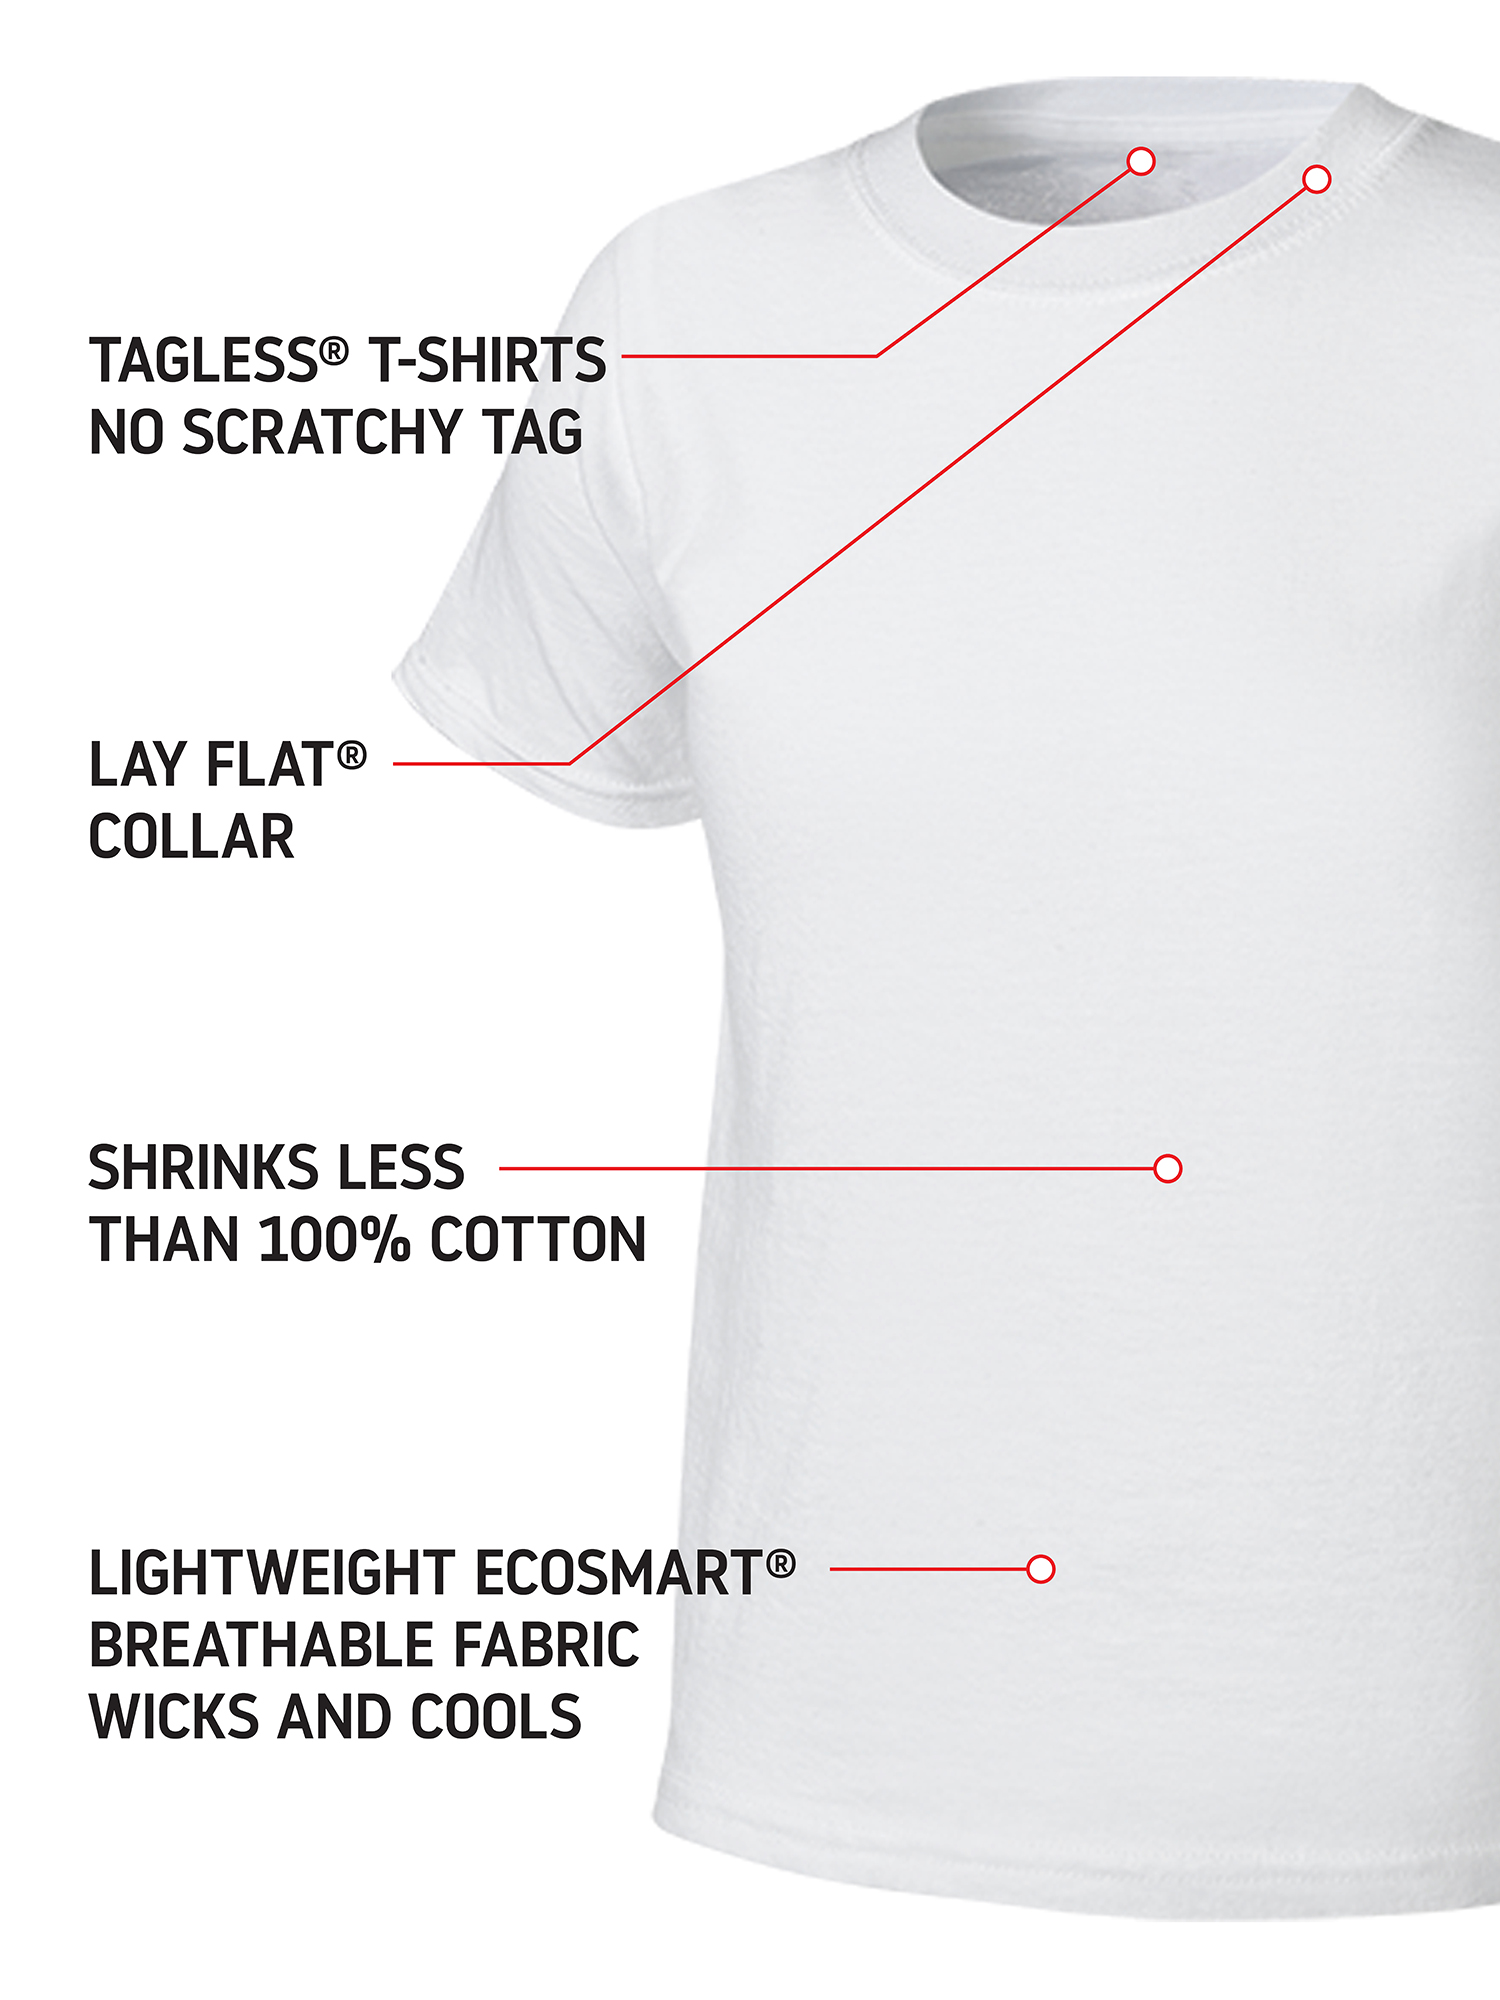 Hanes Boys Undershirts, 5 + 3 Bonus Pack Tagless EcoSmart White Crew Undershirts, Sizes S-XL - image 4 of 7